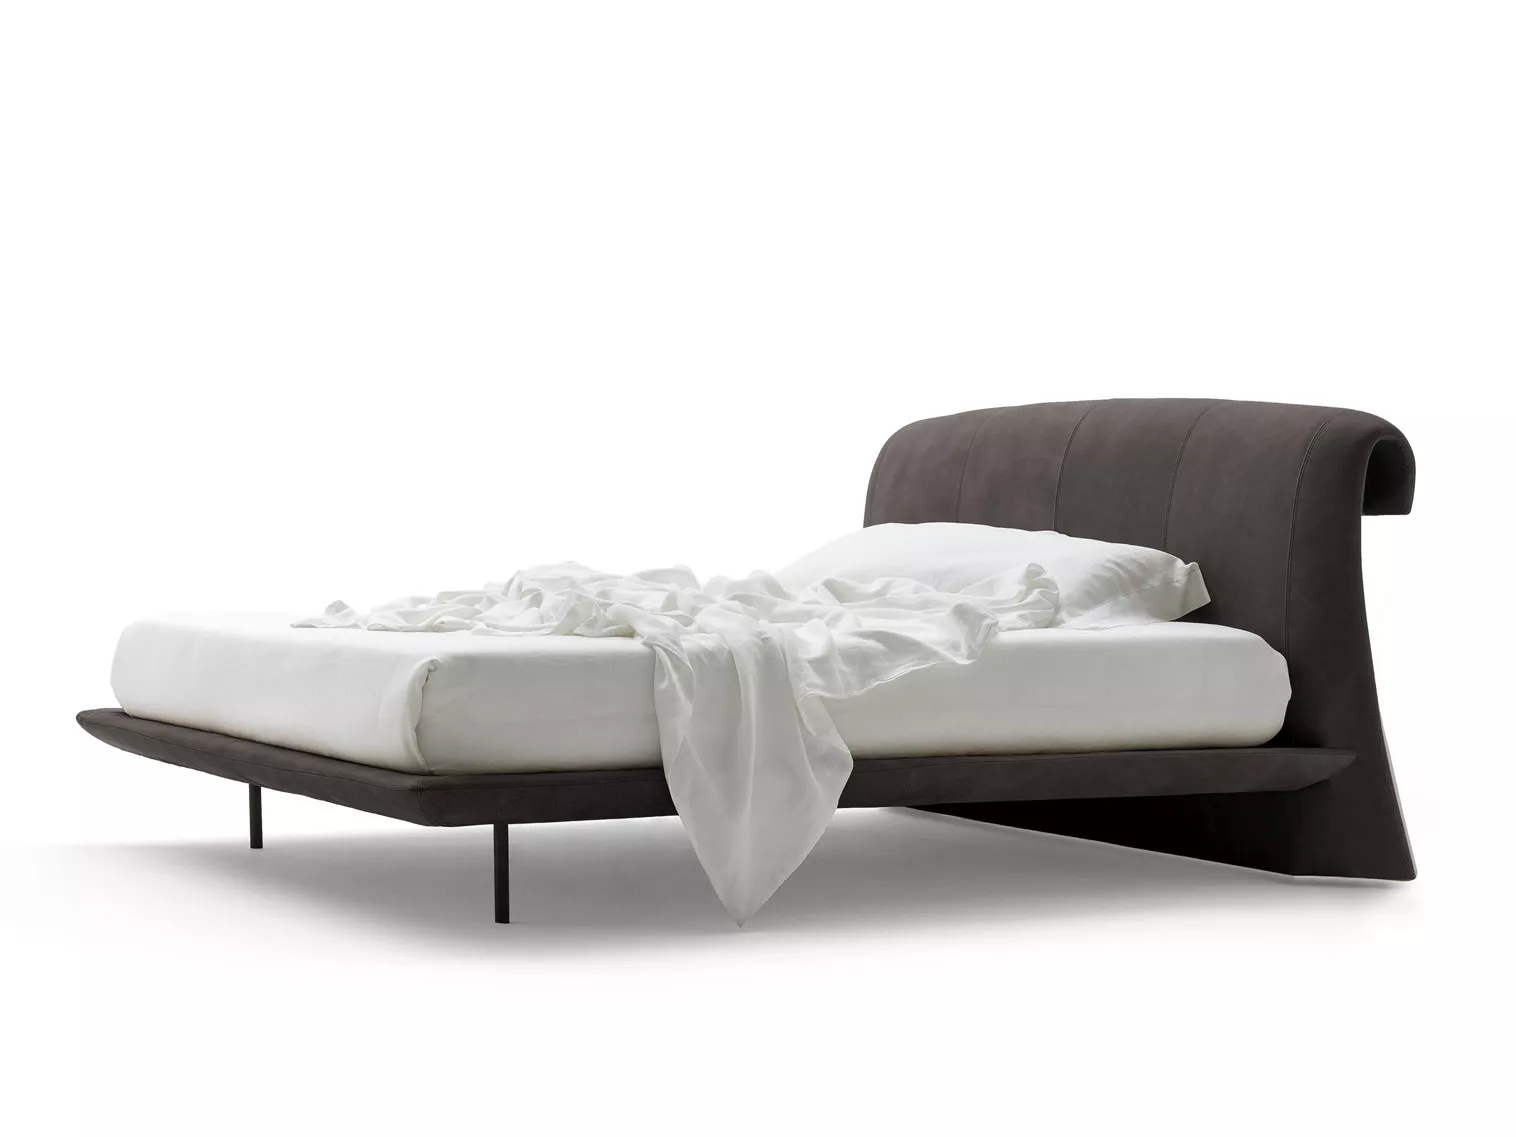 Кровать Onda  Italialounge  — купить по цене фабрики